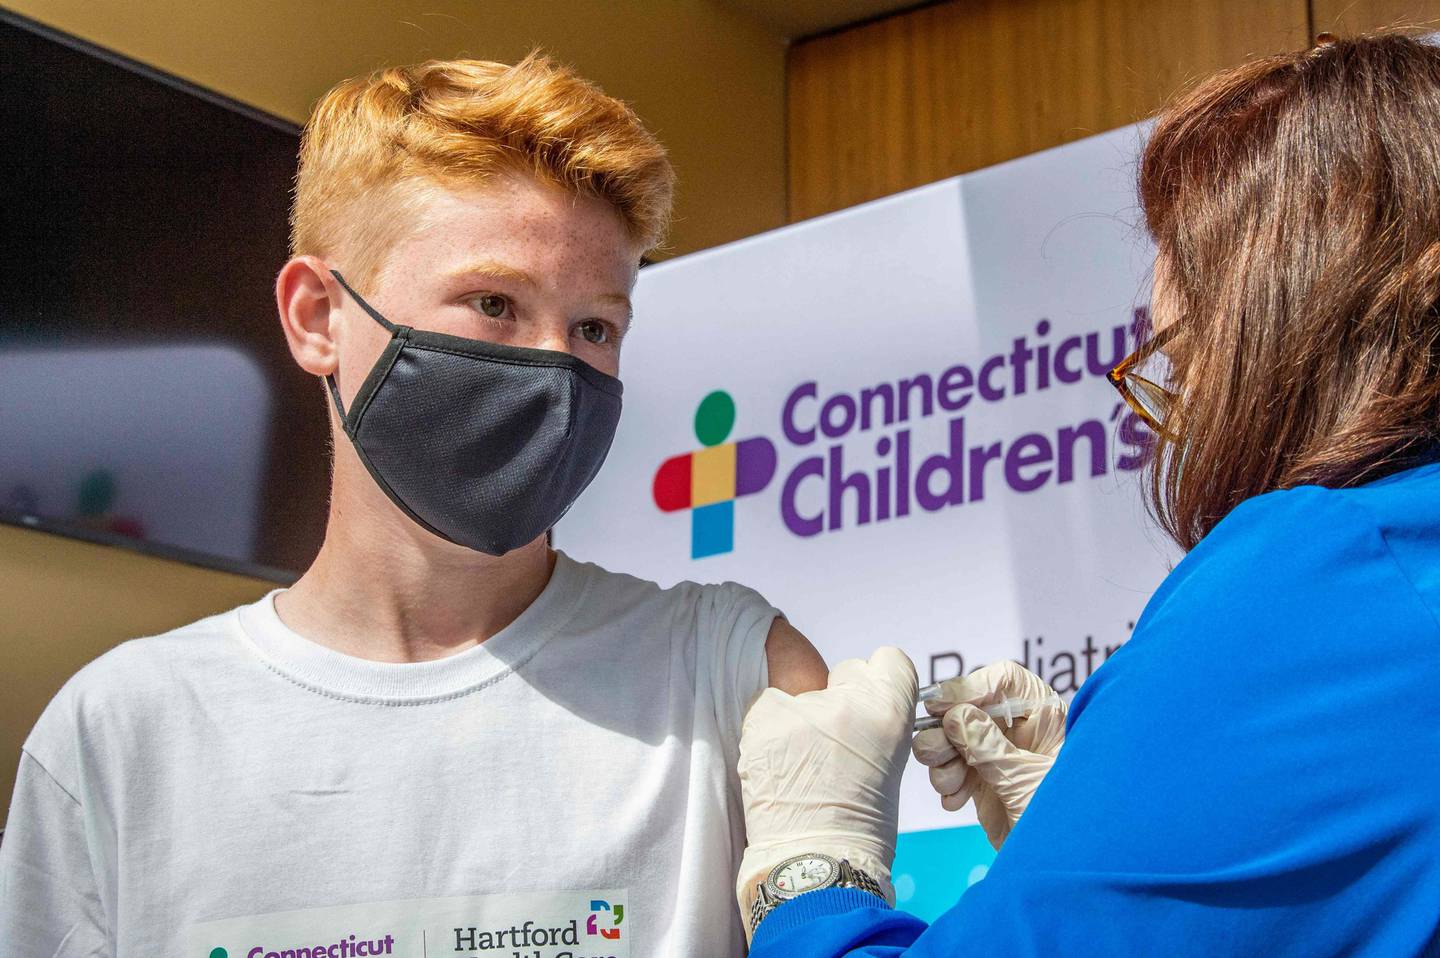 Mange land har begynt koronavaksinering av barn, som denne 13-åringen i Connecticut i USA. I Norge har FHI anbefalt regjeringen vaksinering av 16-17-åringer, men det er ikke avgjort.